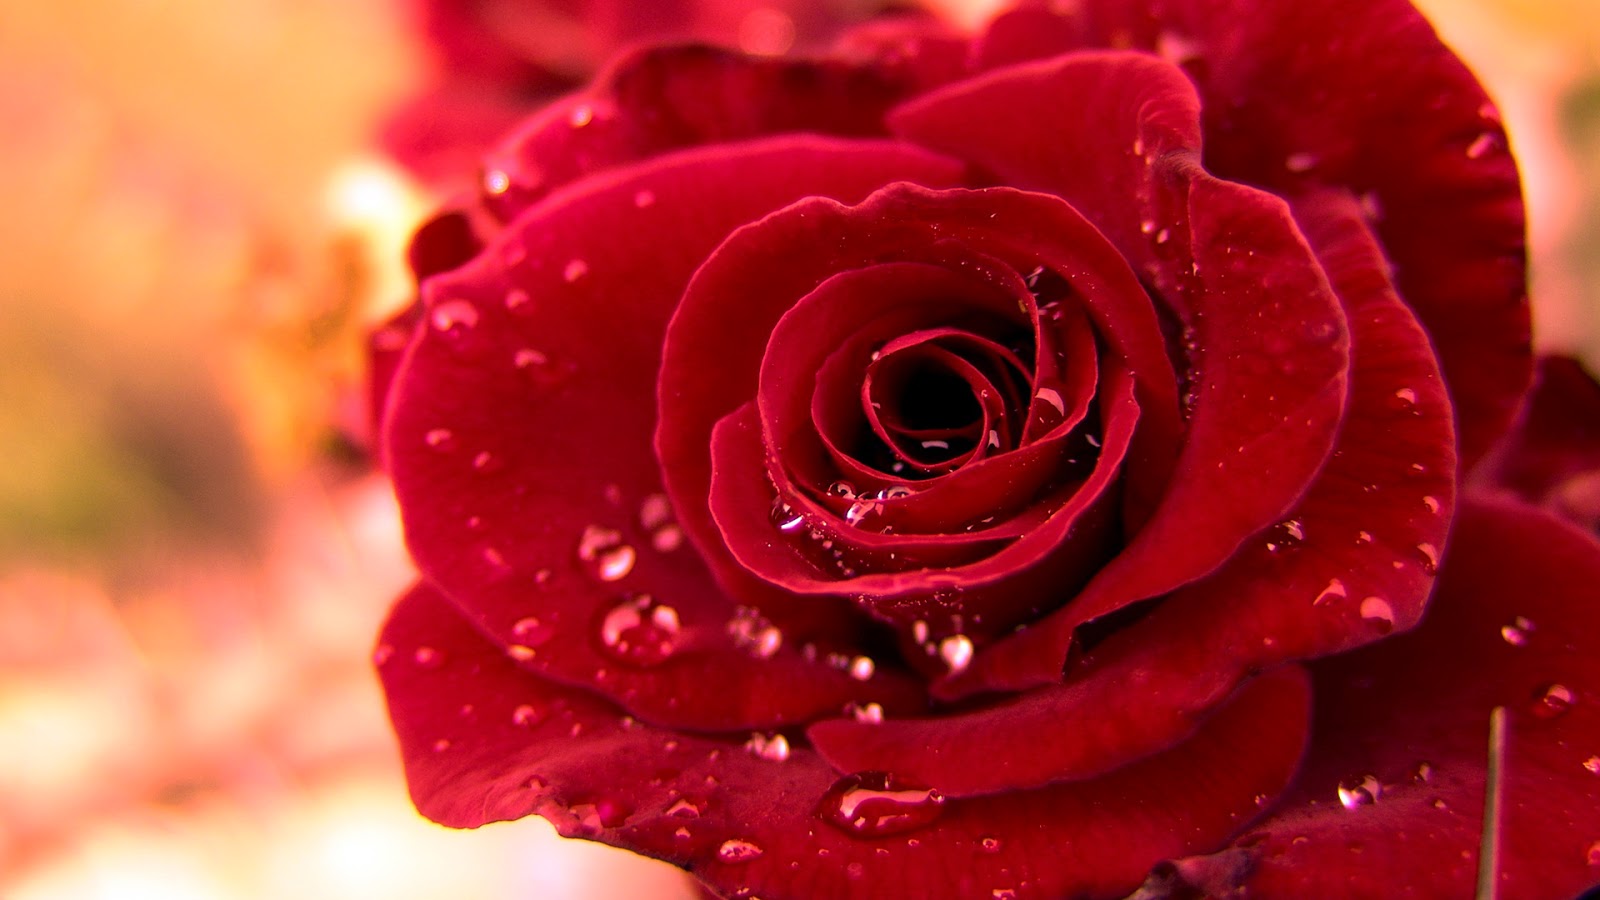 WALLPAPER ANDROID - IPHONE: Wallpaper Bunga Mawar Merah